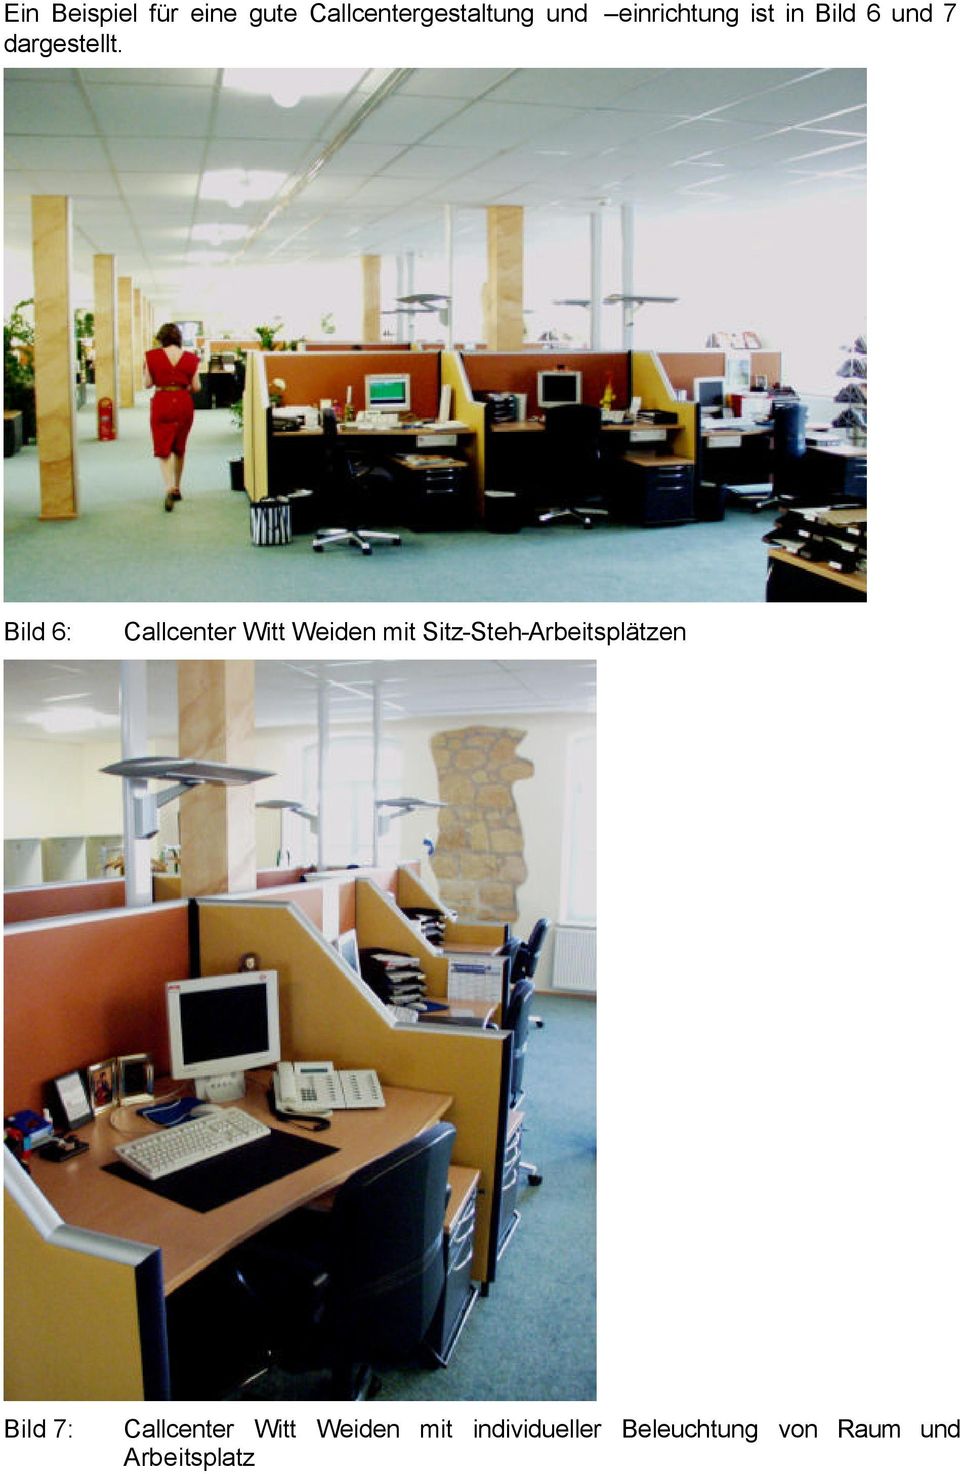 Bild 6: Callcenter Witt Weiden mit Sitz-Steh-Arbeitsplätzen